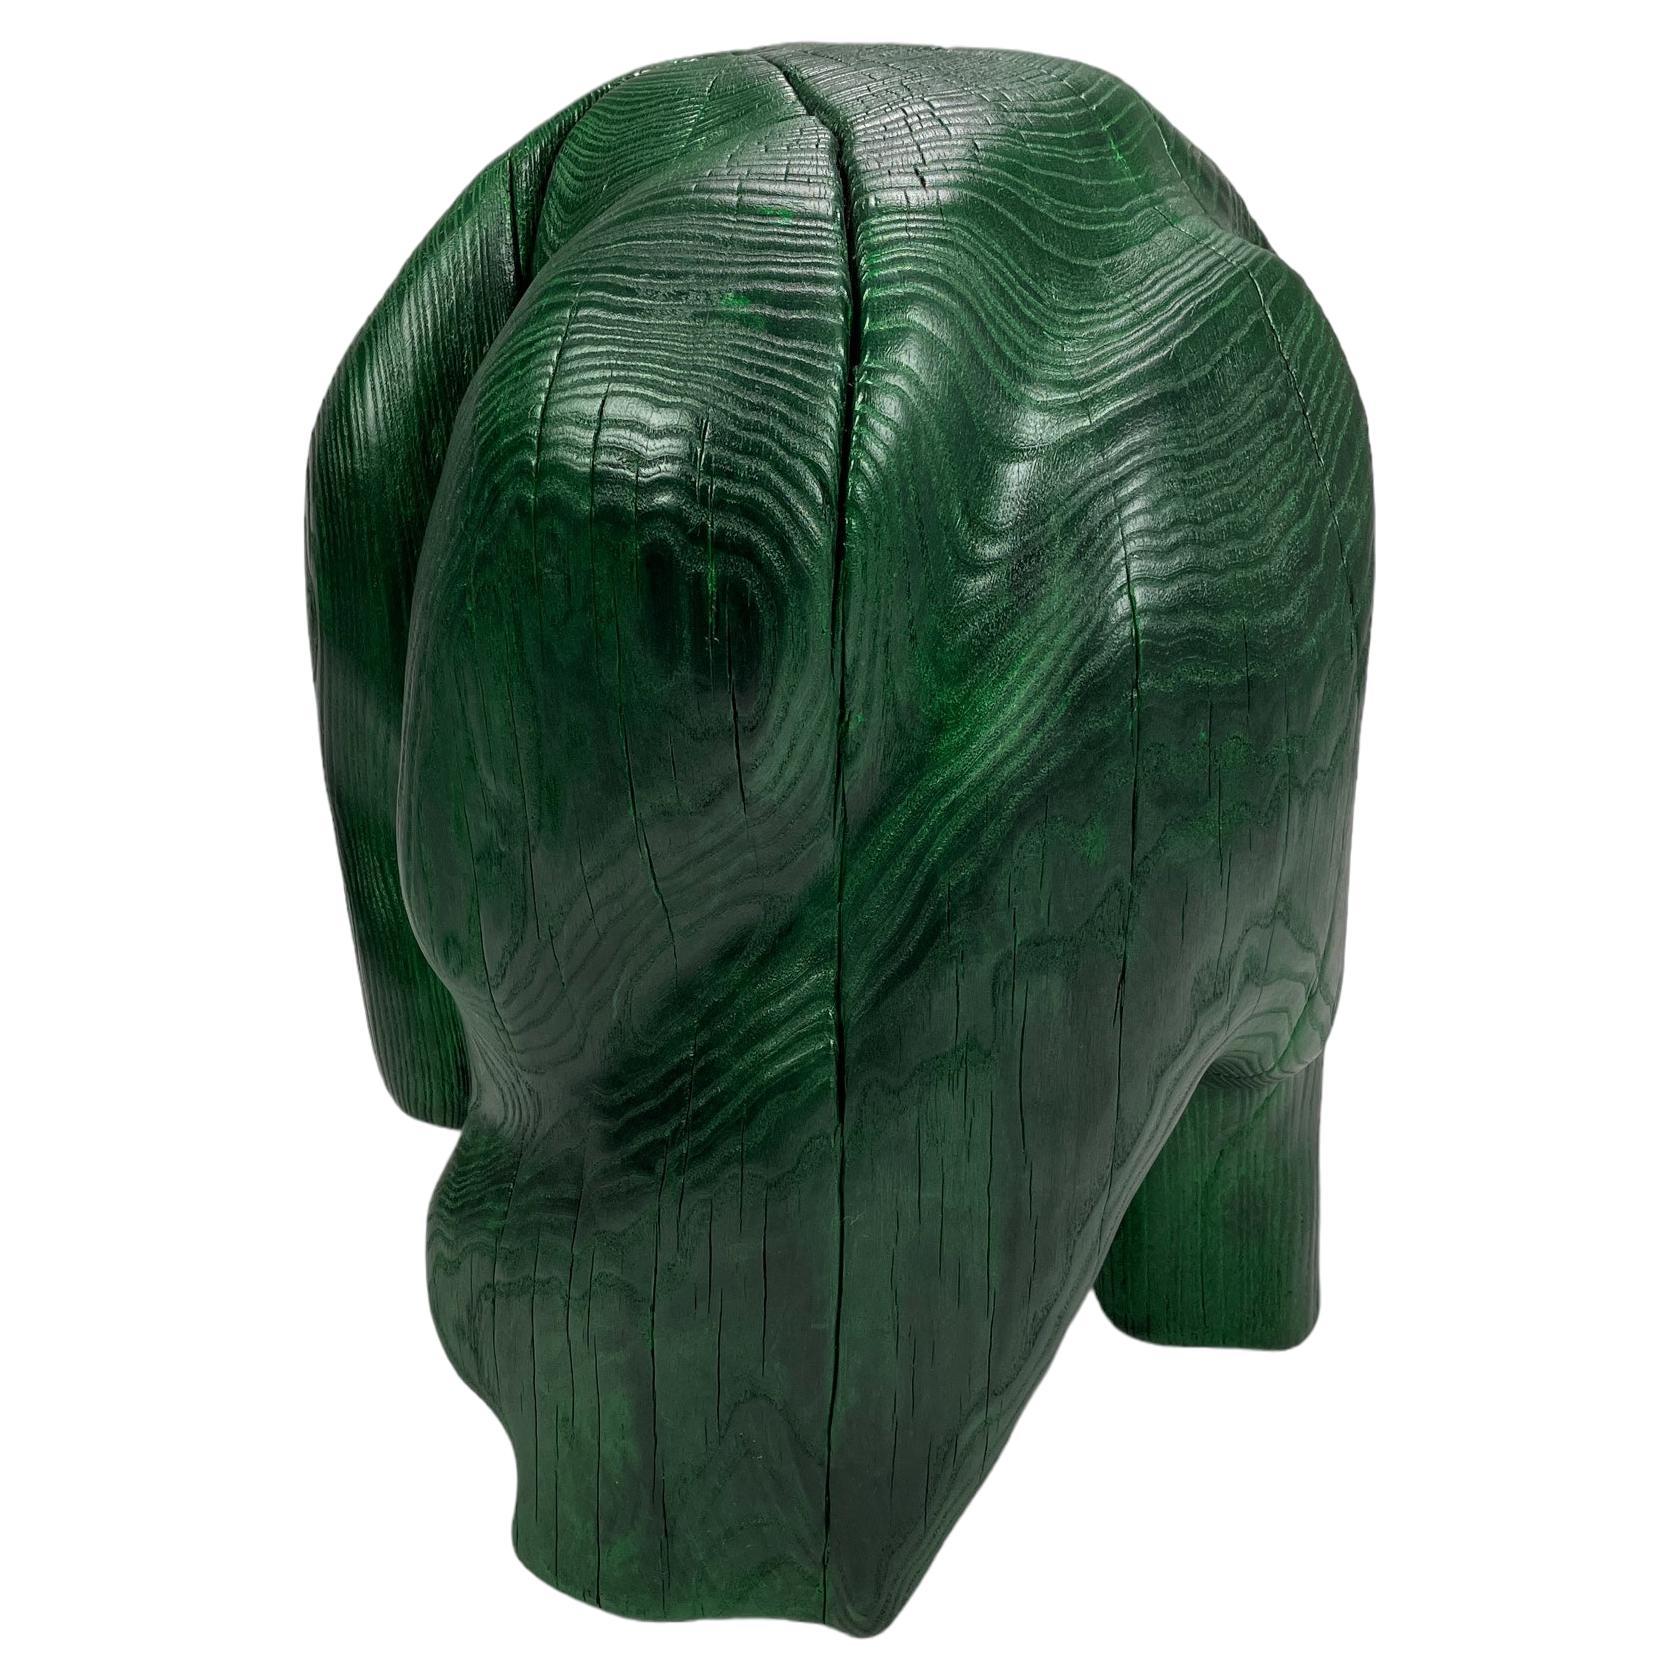 Tabouret sculptural en bois sculpté « Skinn de serpent » par ELAKFORM